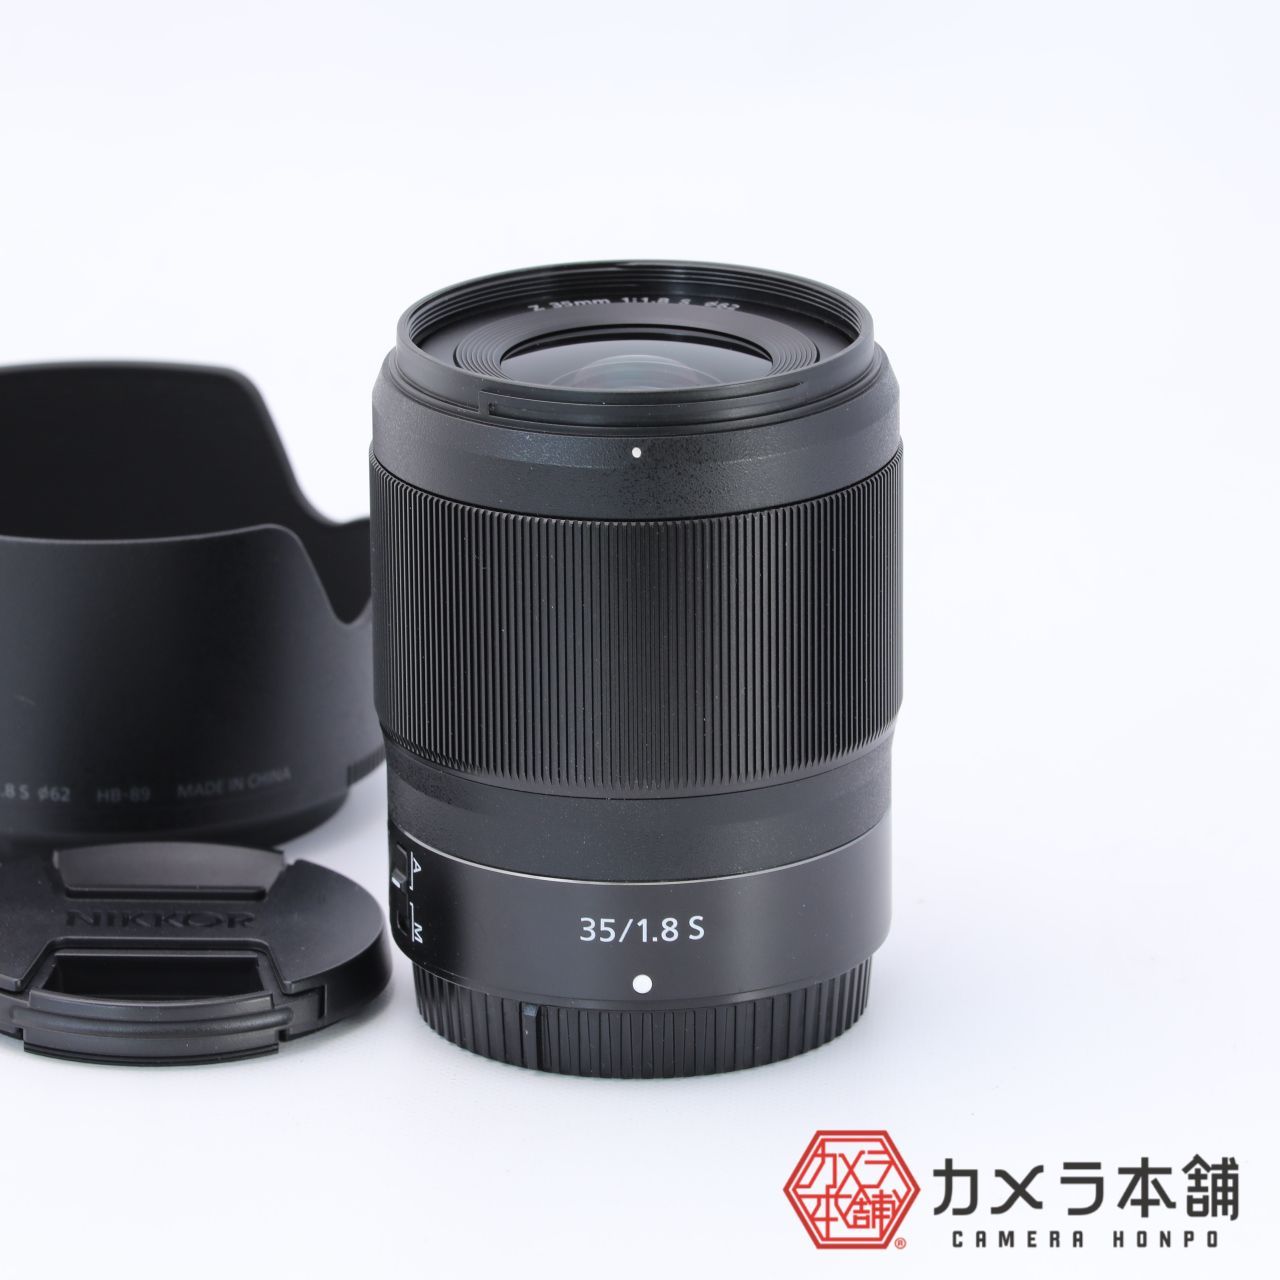 ニコン Z 35mm f1.8S 保護フィルター付き - レンズ(単焦点)